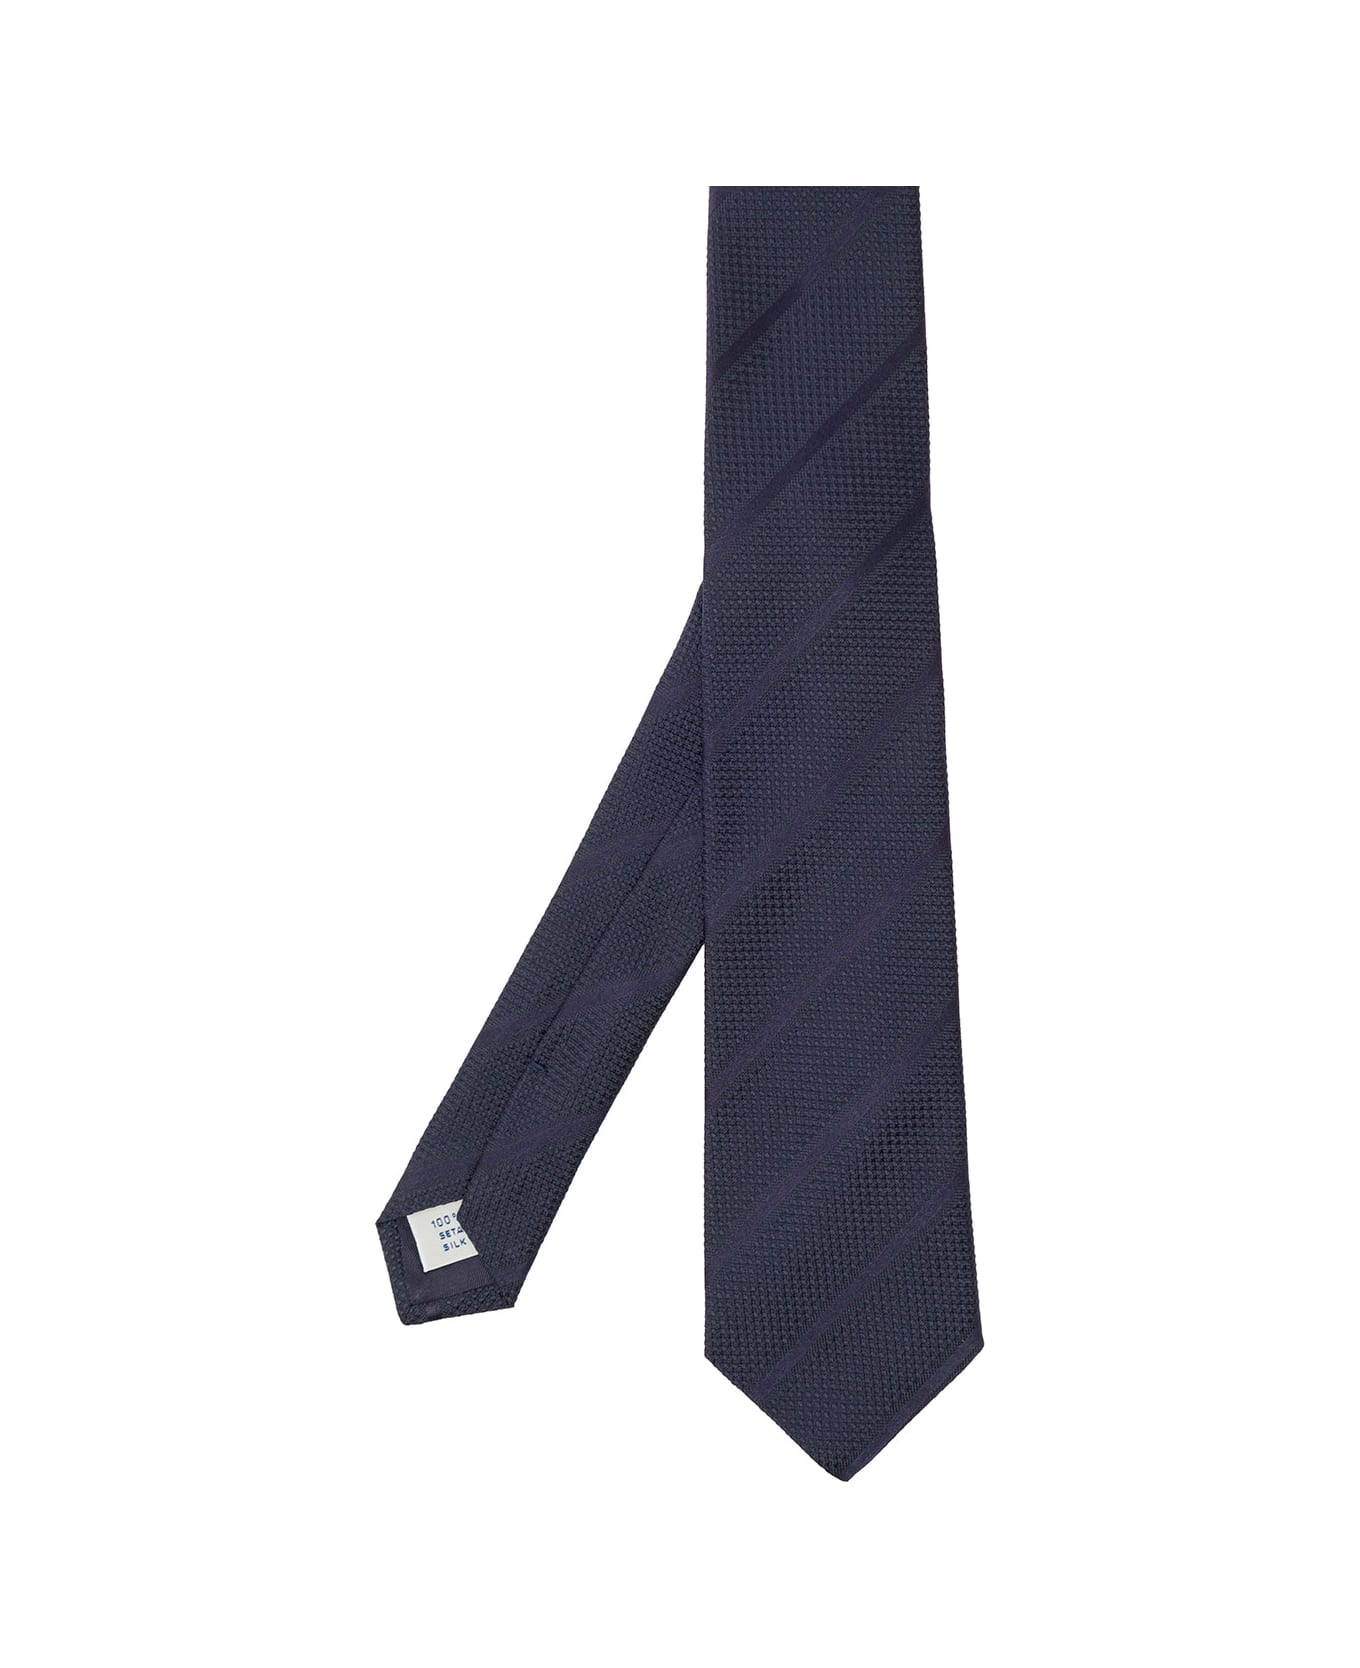 Tagliatore Blue Classic-style Striped Tie In Silk Man - BLUE/NEUTRALS